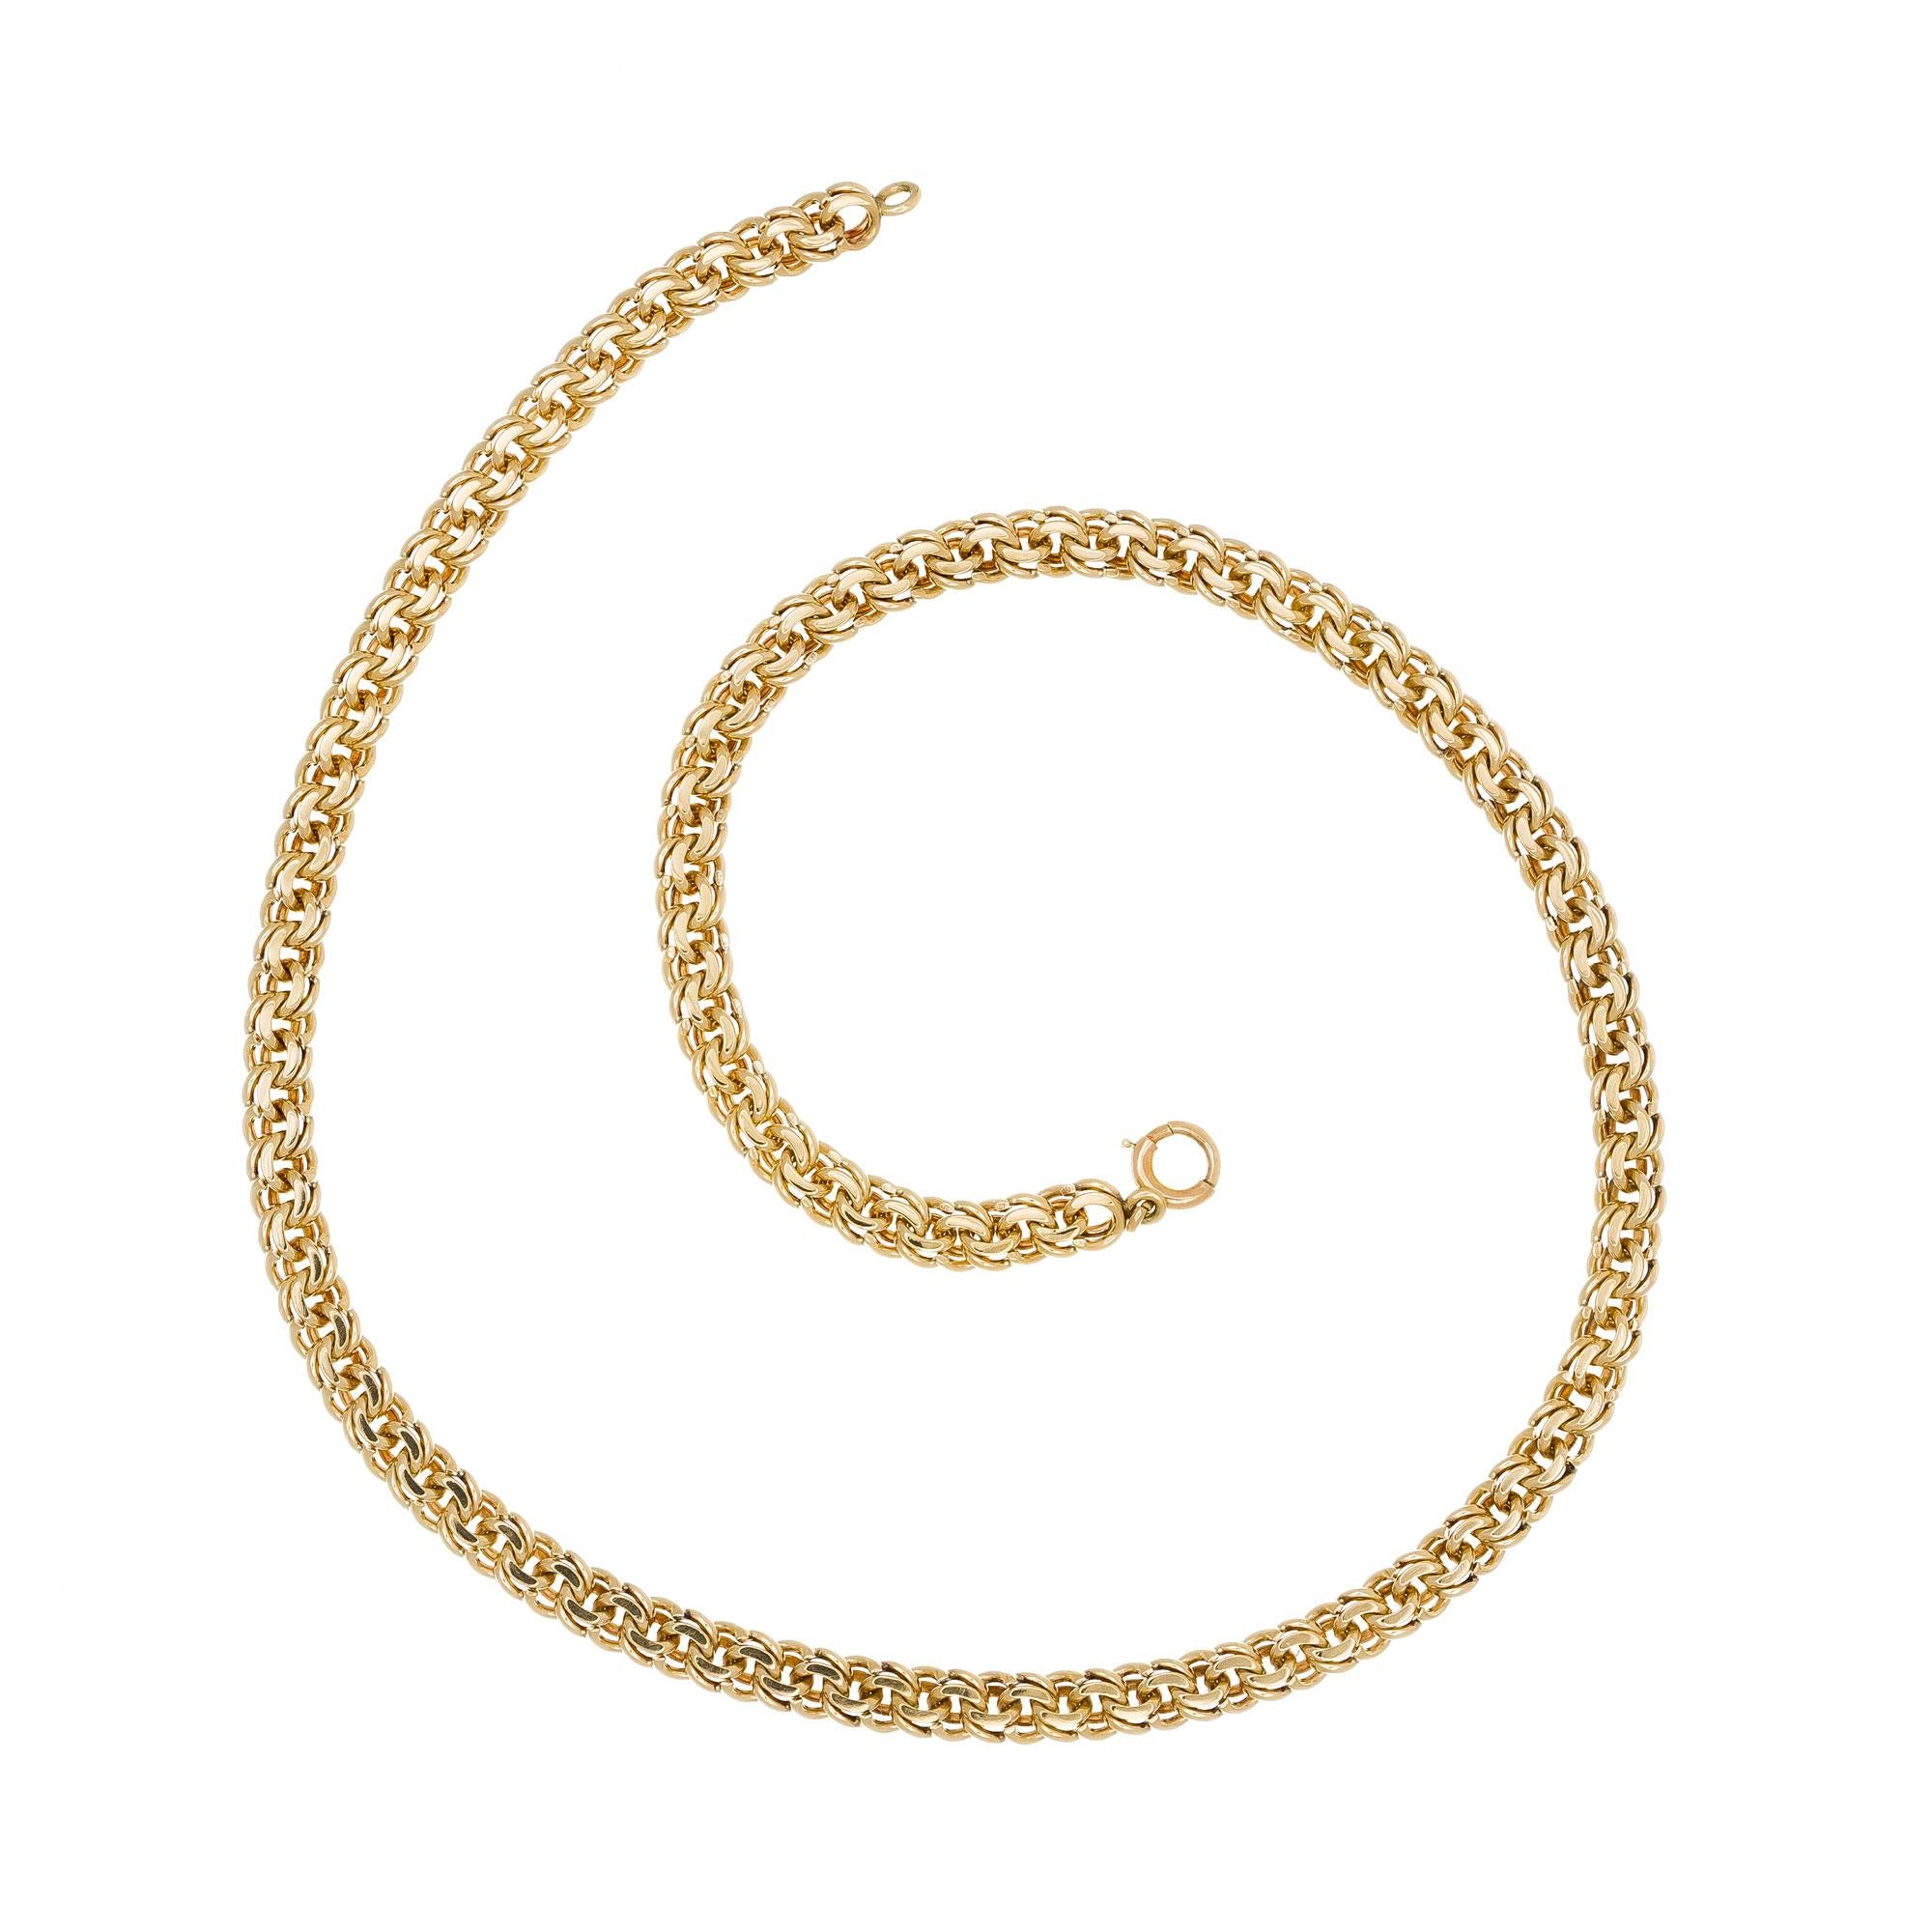 Vintage 194's handgemachte Doppelspirale Link 14k Gelbgold Halskette. 16 Zoll Halskette.  

14k Gelbgold
32.3 Gramm
Geprüft und gestempelt: 14k
Länge: 16 Zoll - Breite: 5,61 mm - Tiefe 3,03 mm